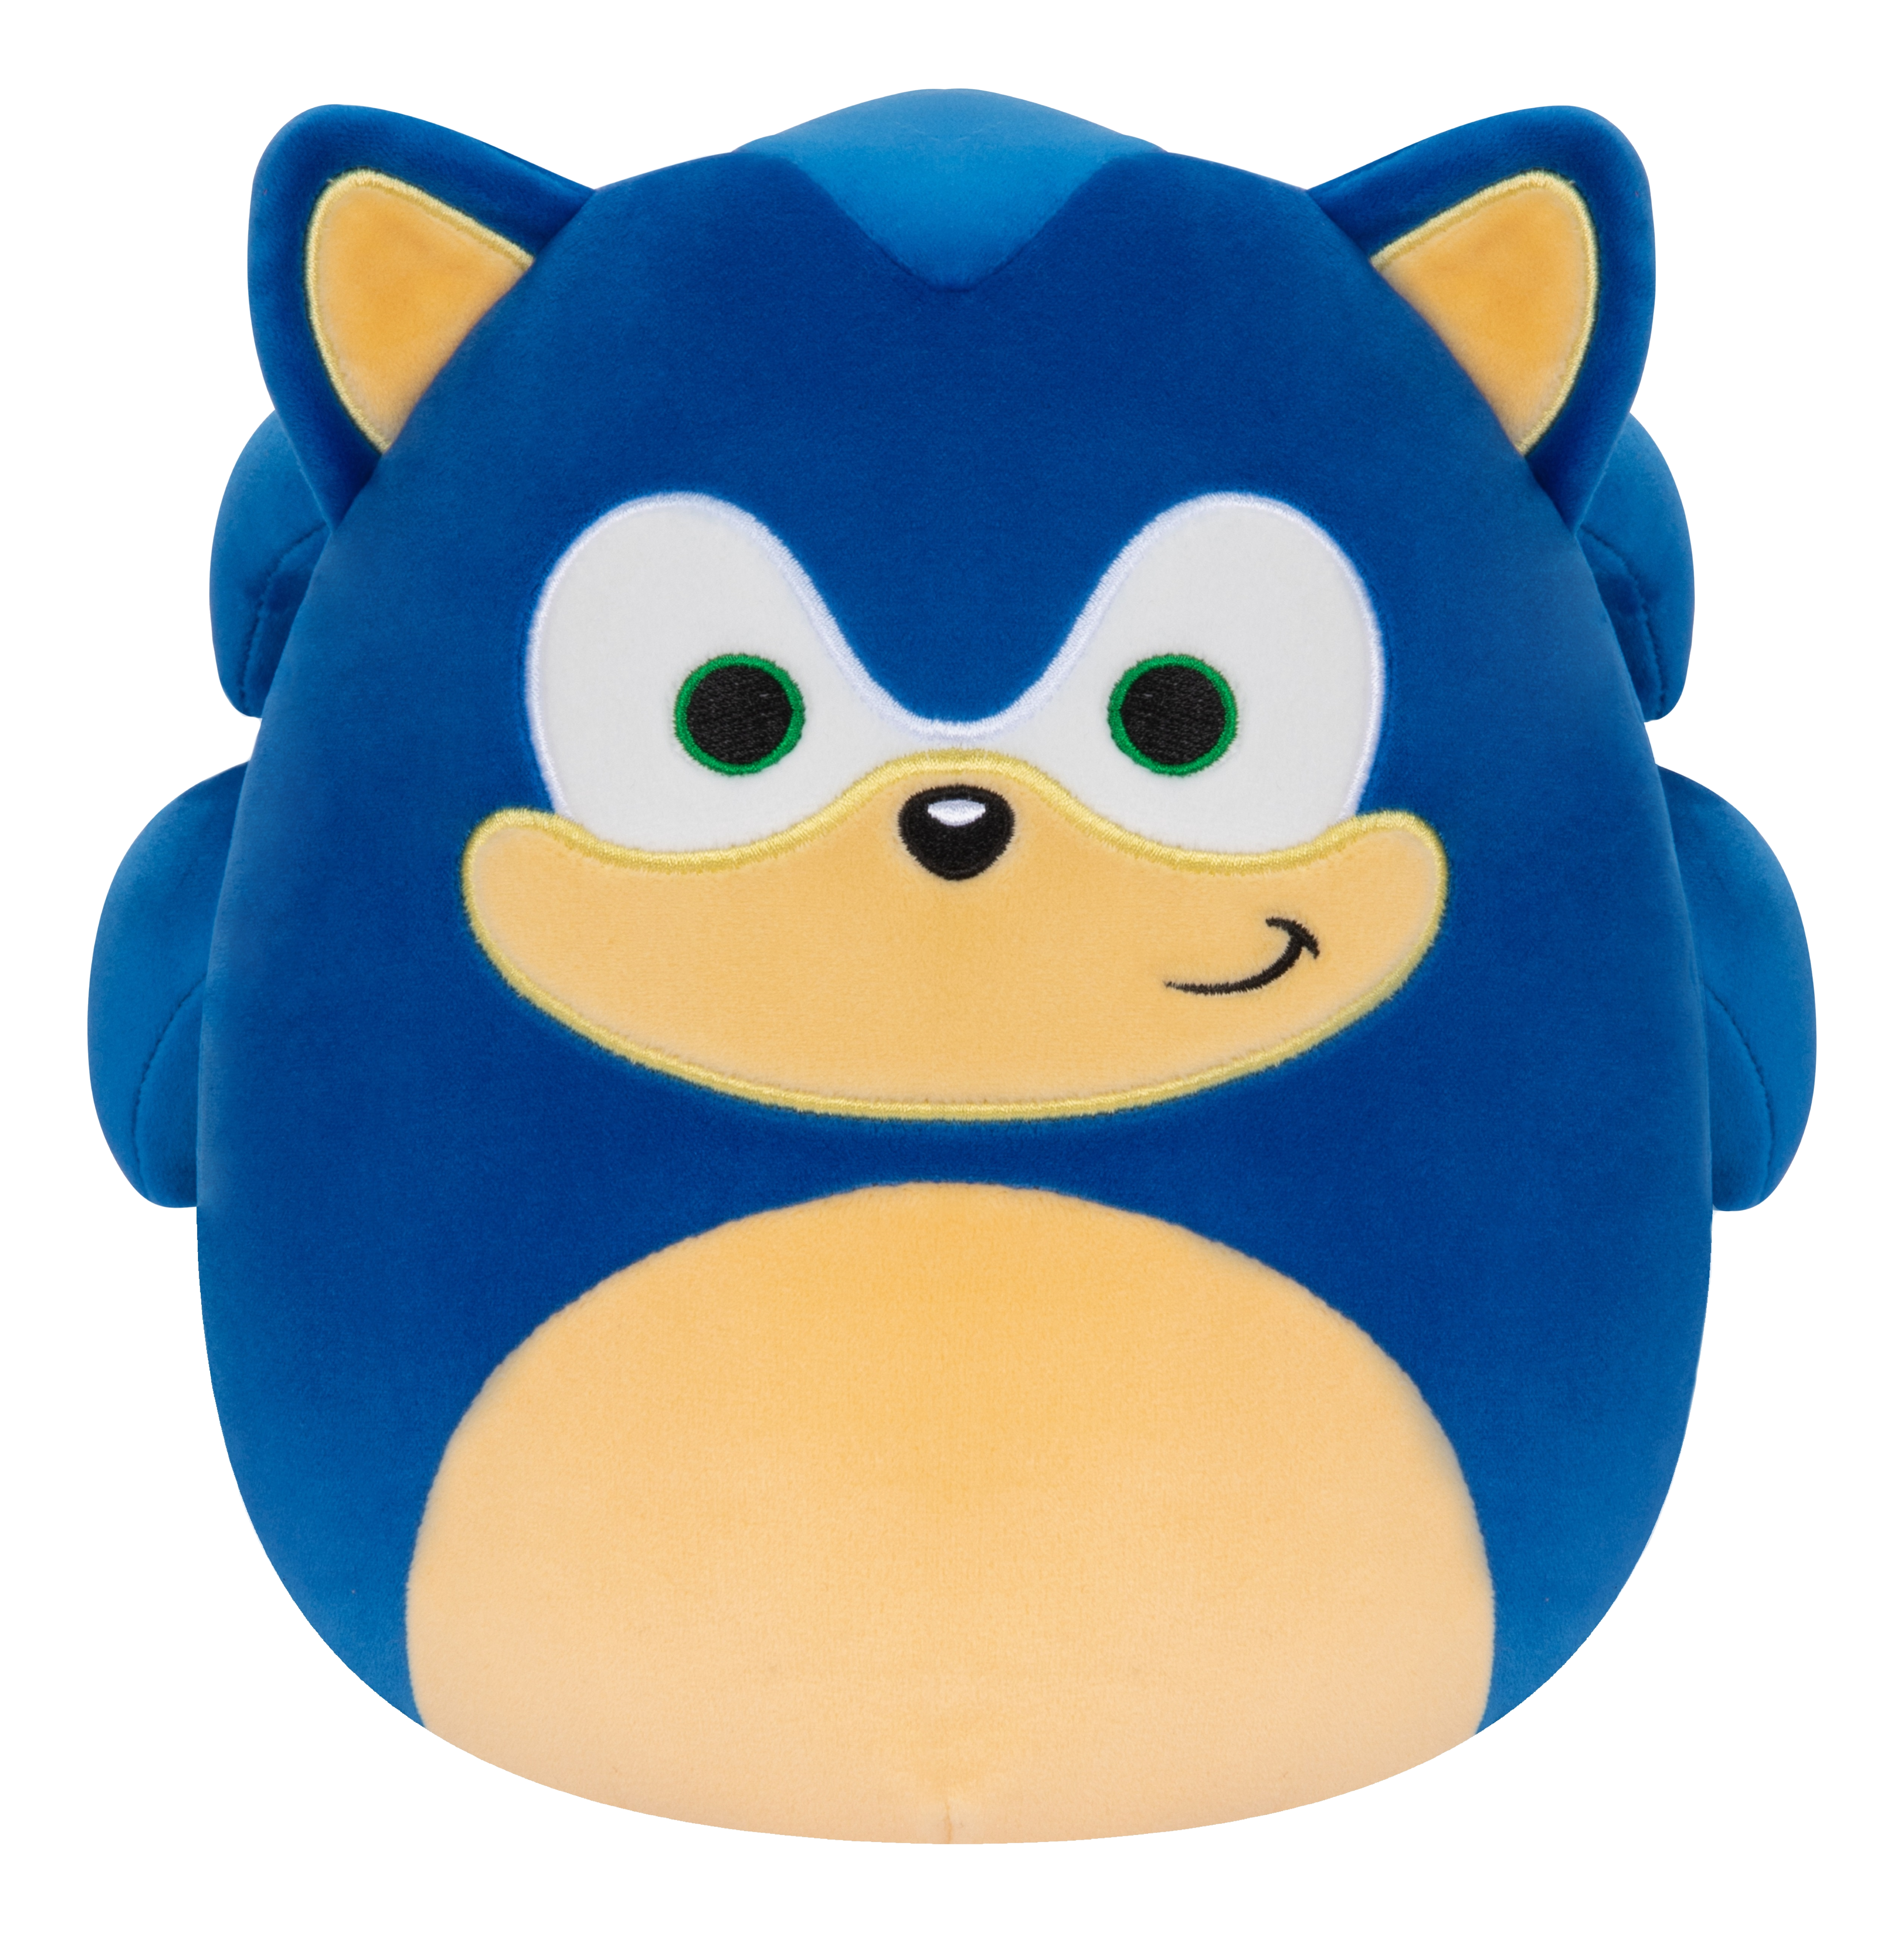 JAZWARES Squishmallows - Sonic the Hedgehog - Plüschfigur (Blau/Creme/Weiss)